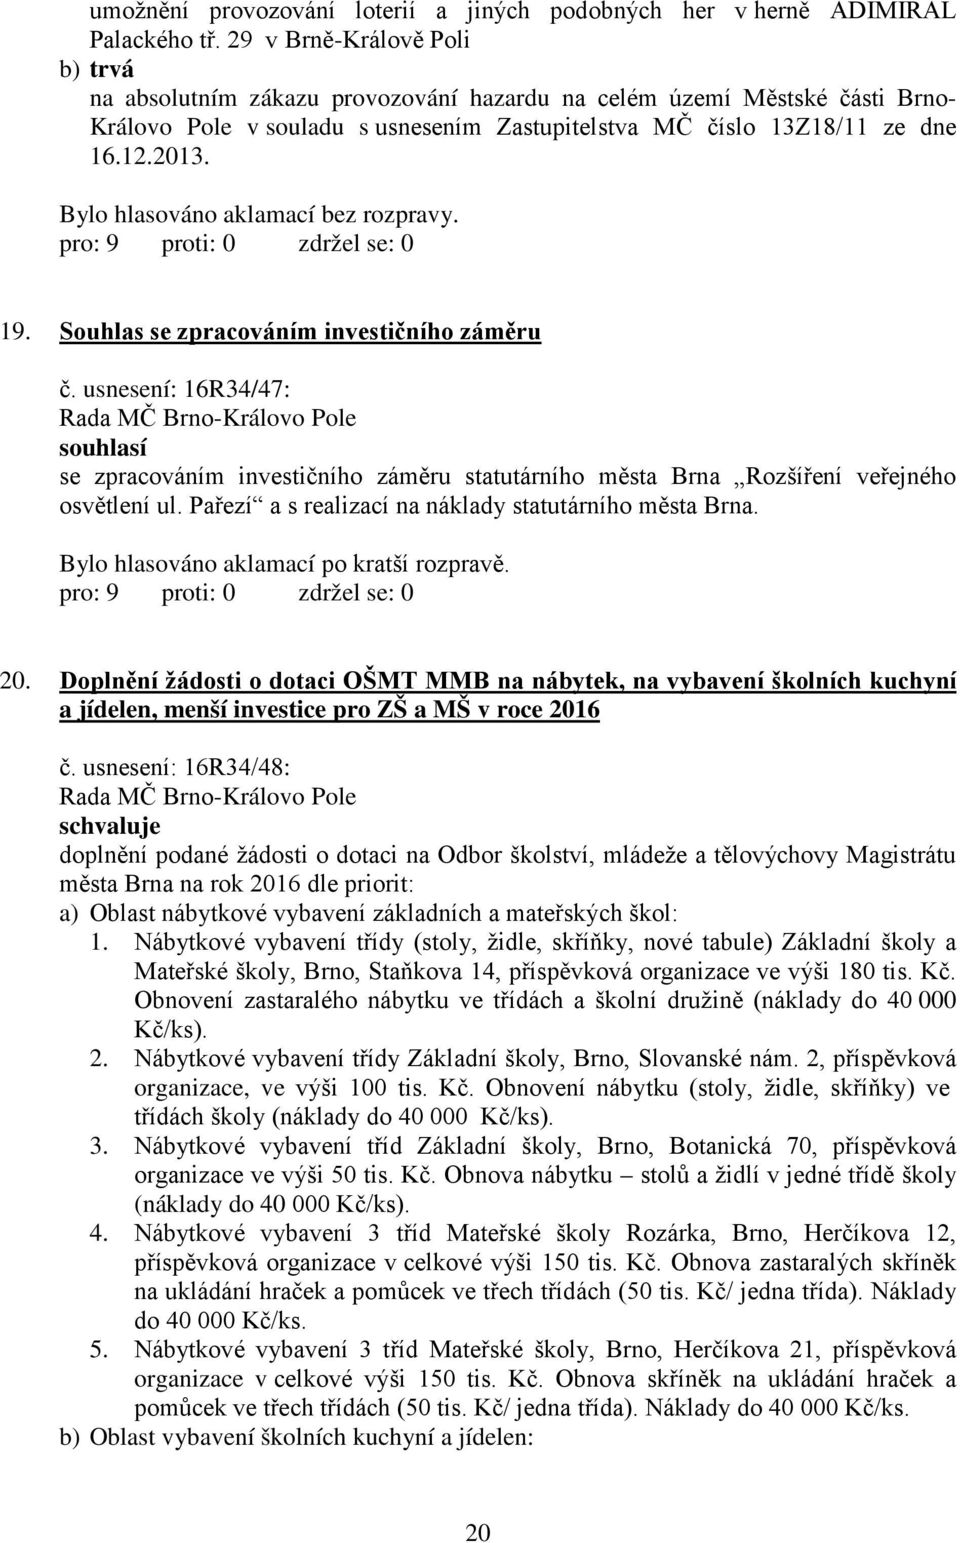 Souhlas se zpracováním investičního záměru č. usnesení: 16R34/47: Rada MČ Brno-Královo Pole souhlasí se zpracováním investičního záměru statutárního města Brna Rozšíření veřejného osvětlení ul.